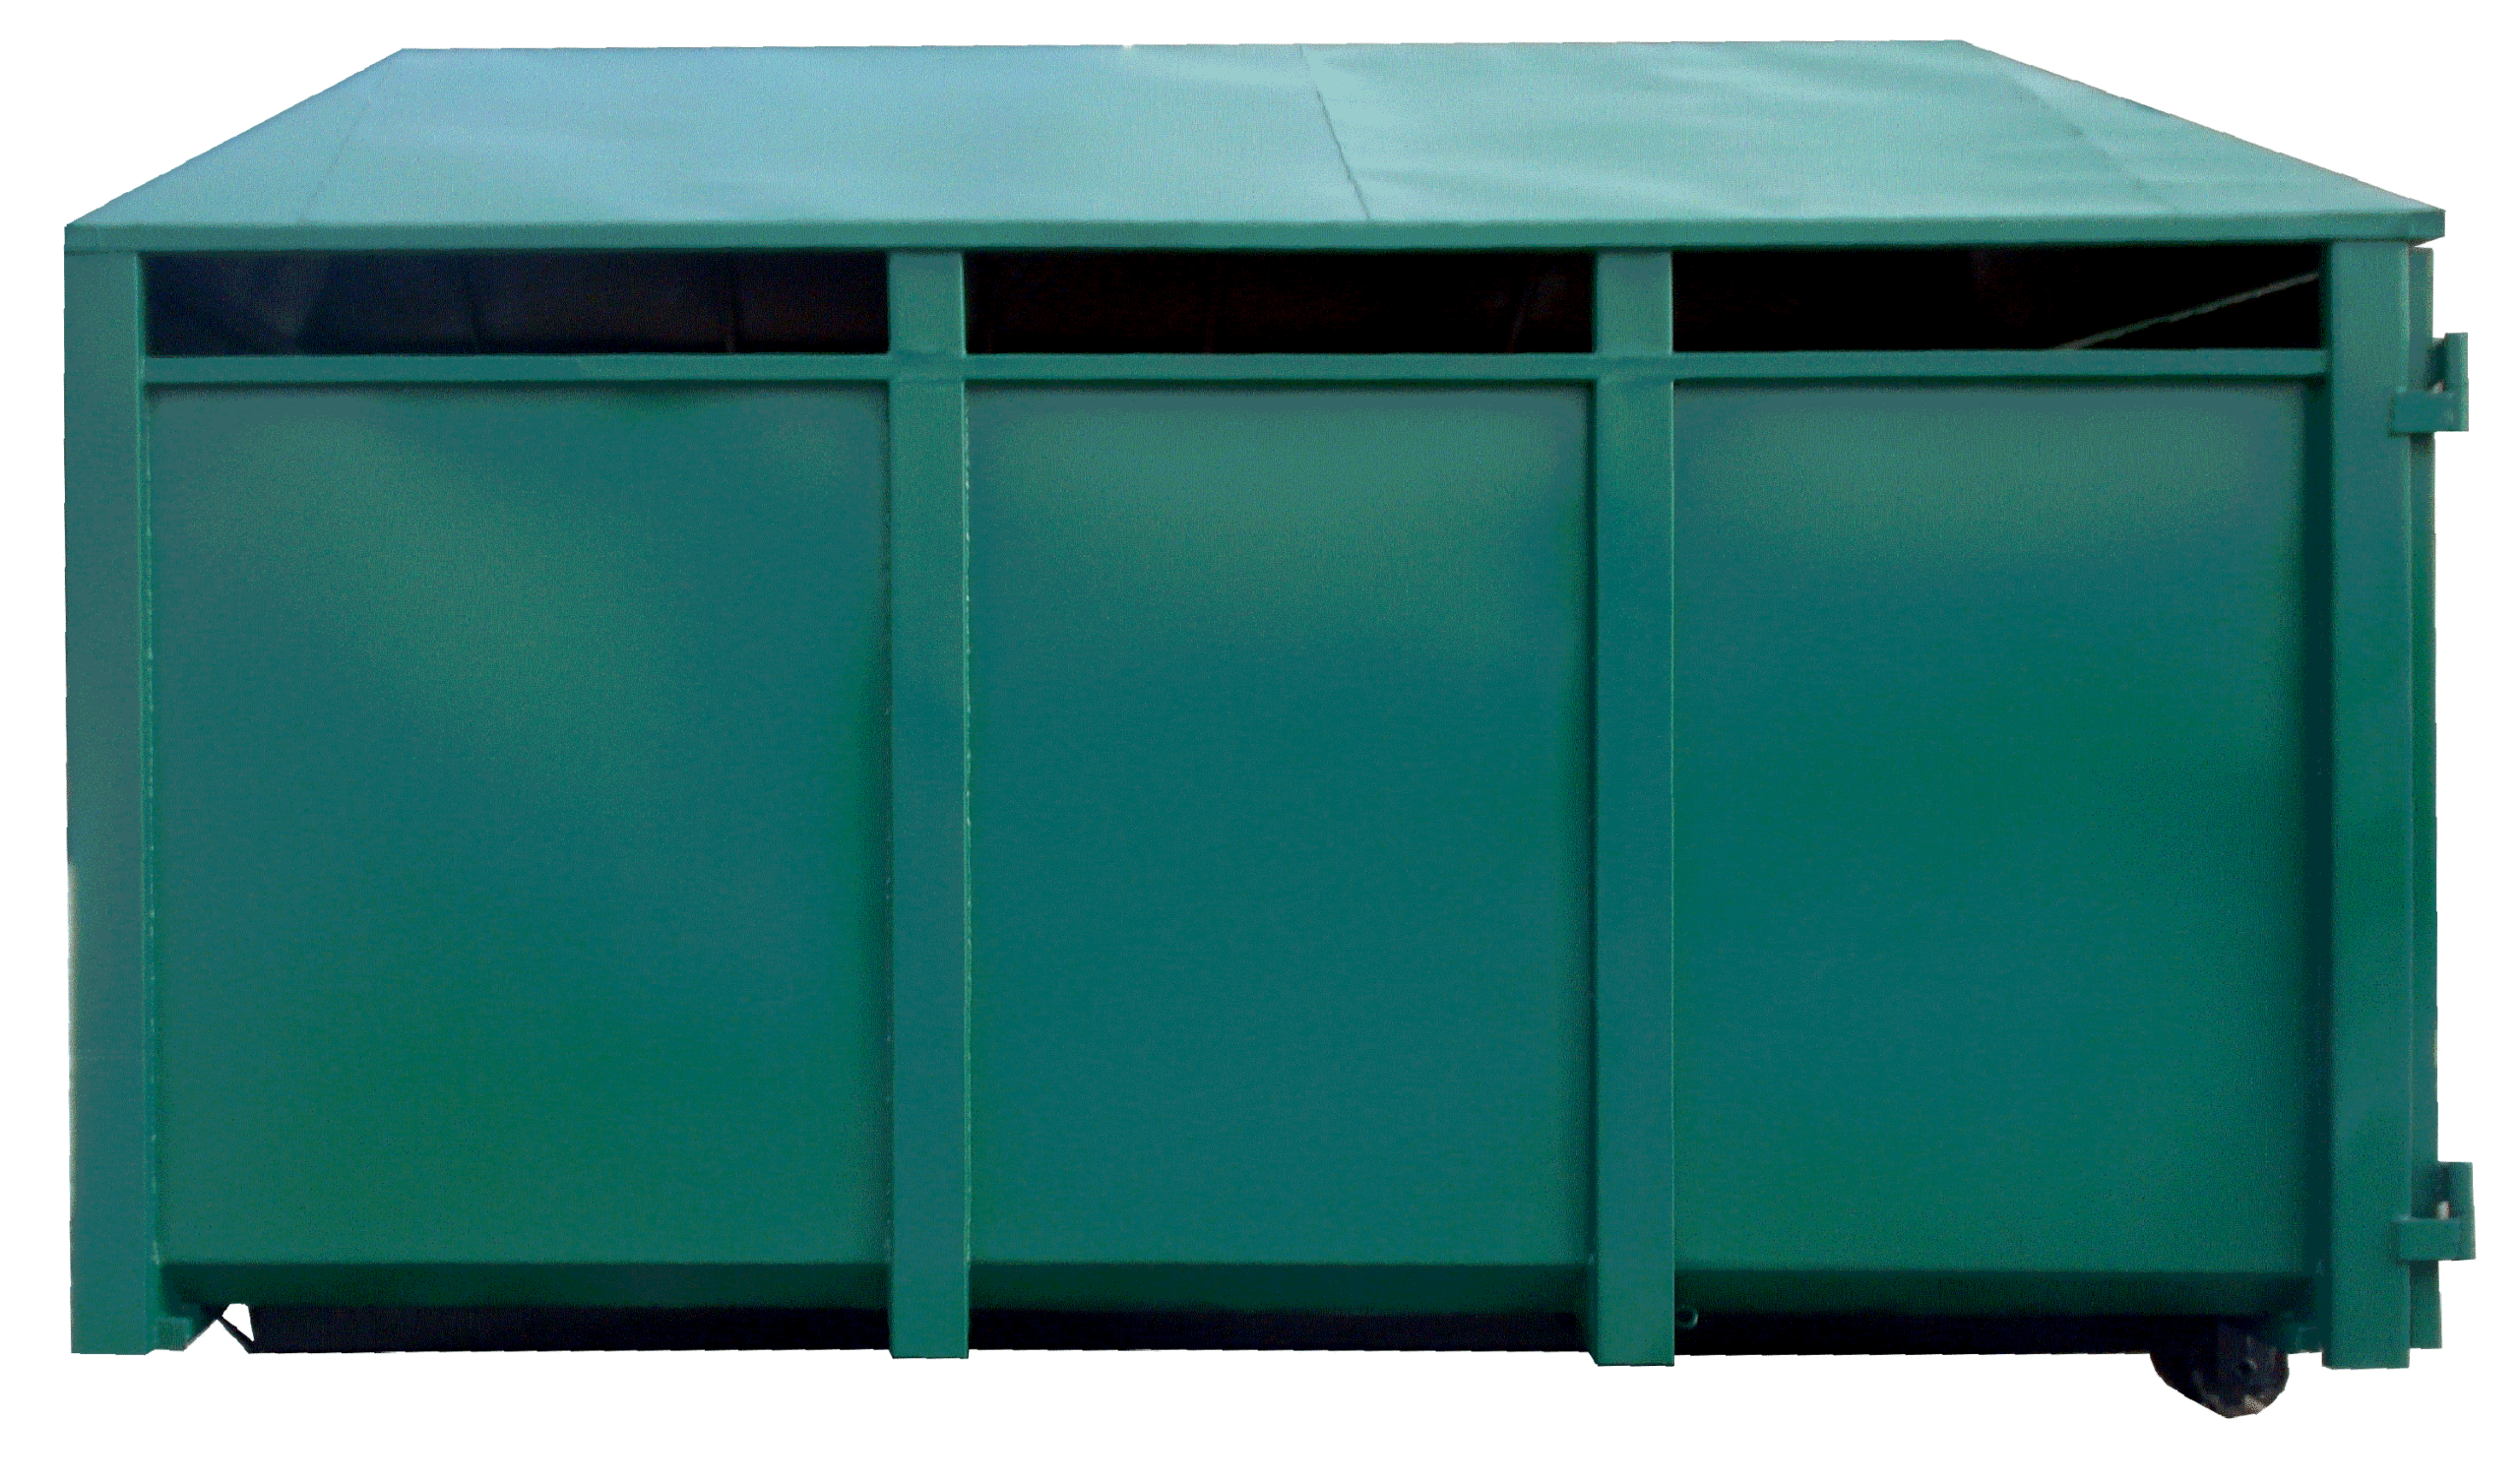 Zakryty kontener KP 15 z rolkami jezdnymi